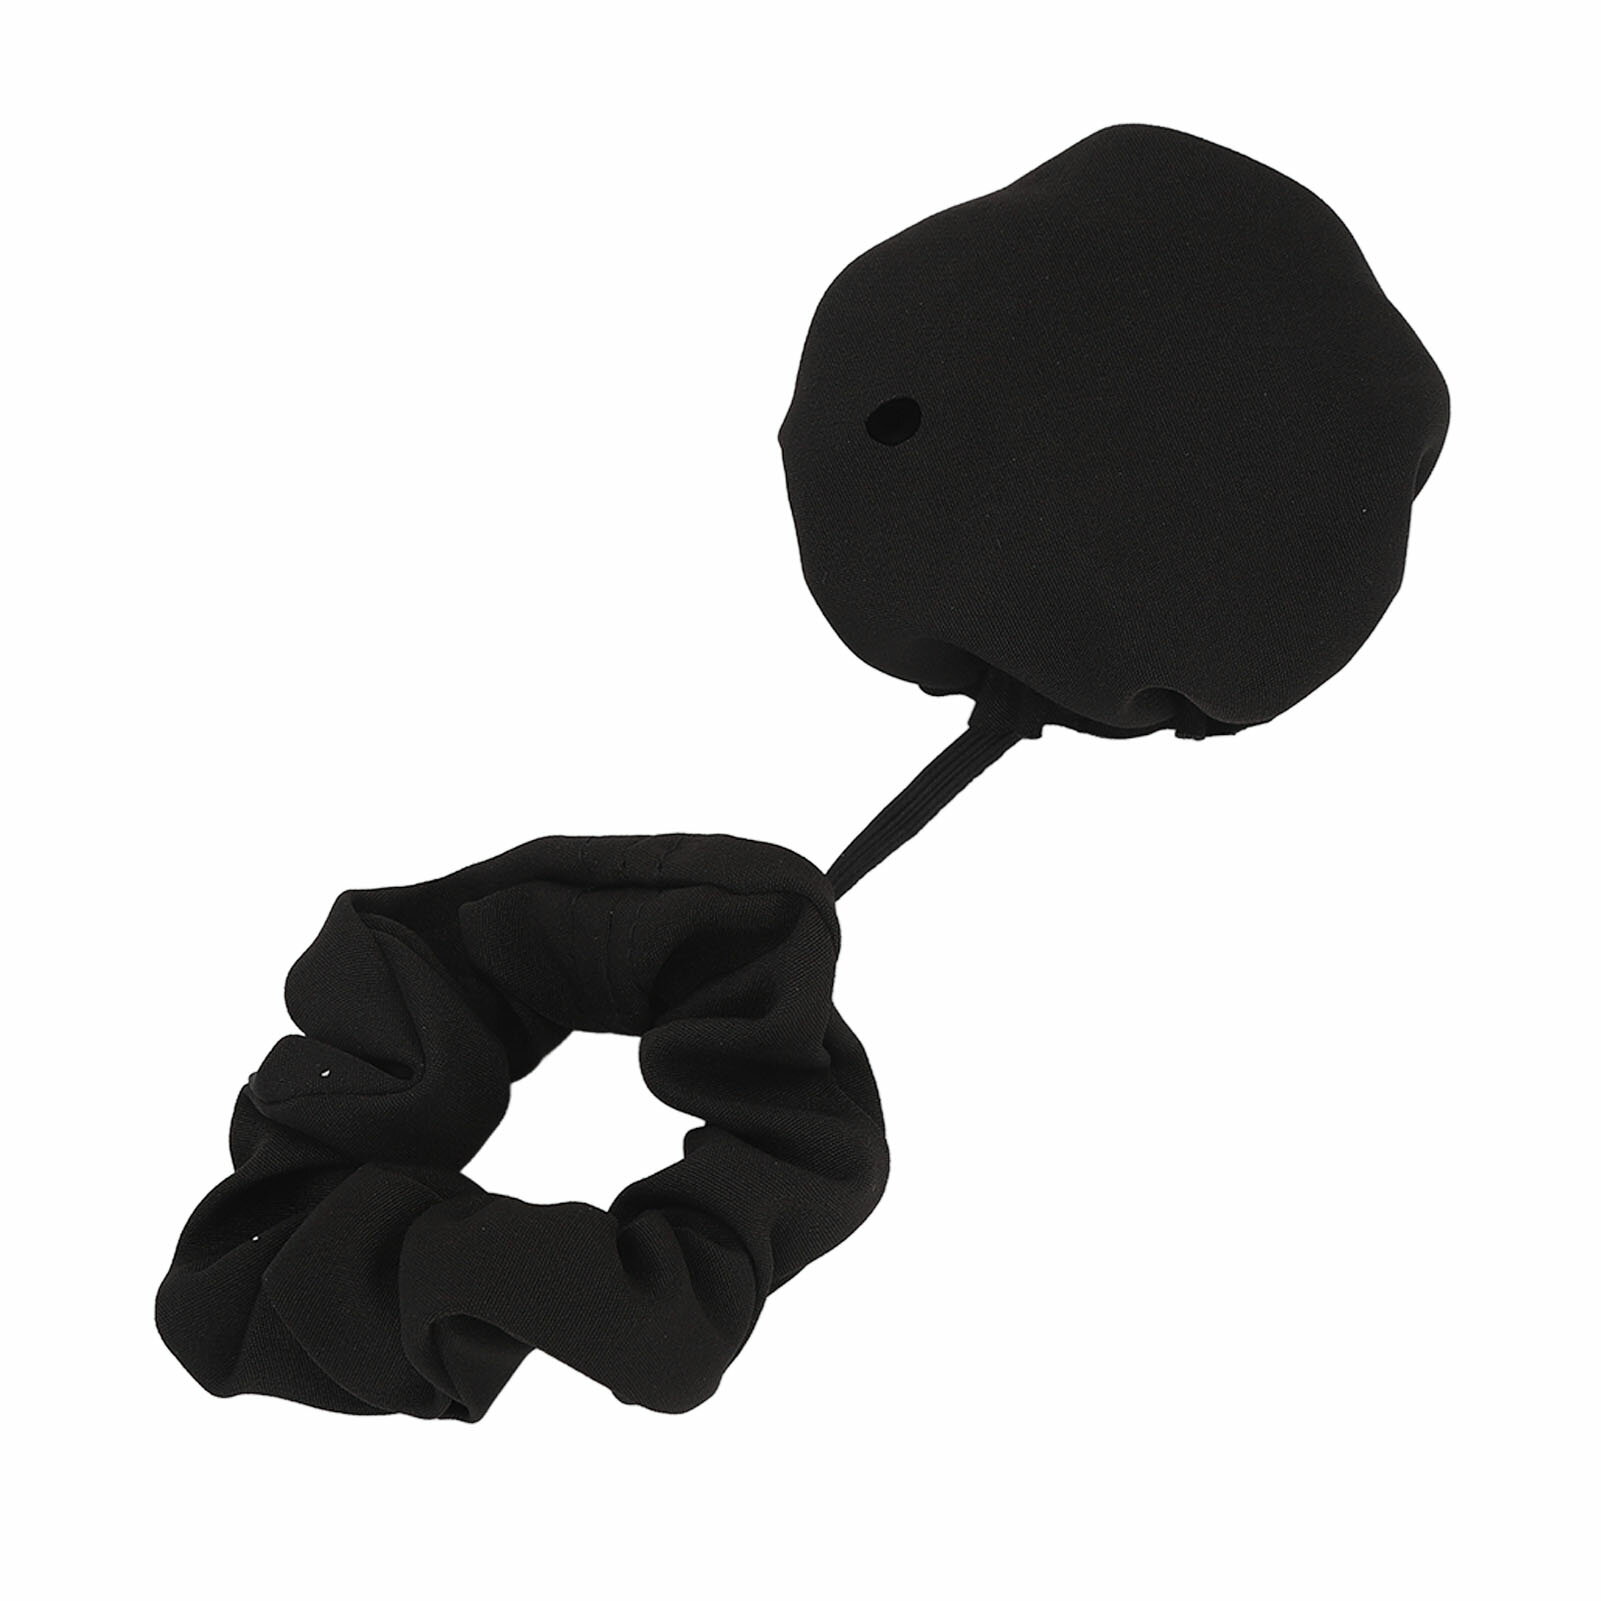 ドリンクカバー シュシュ アンチスパイク ドリンクカップカバー プロテクター シュシュ 再利用可能 お手入れ簡単 実用的な隠しシュシュ ドリンクカバー 黒 